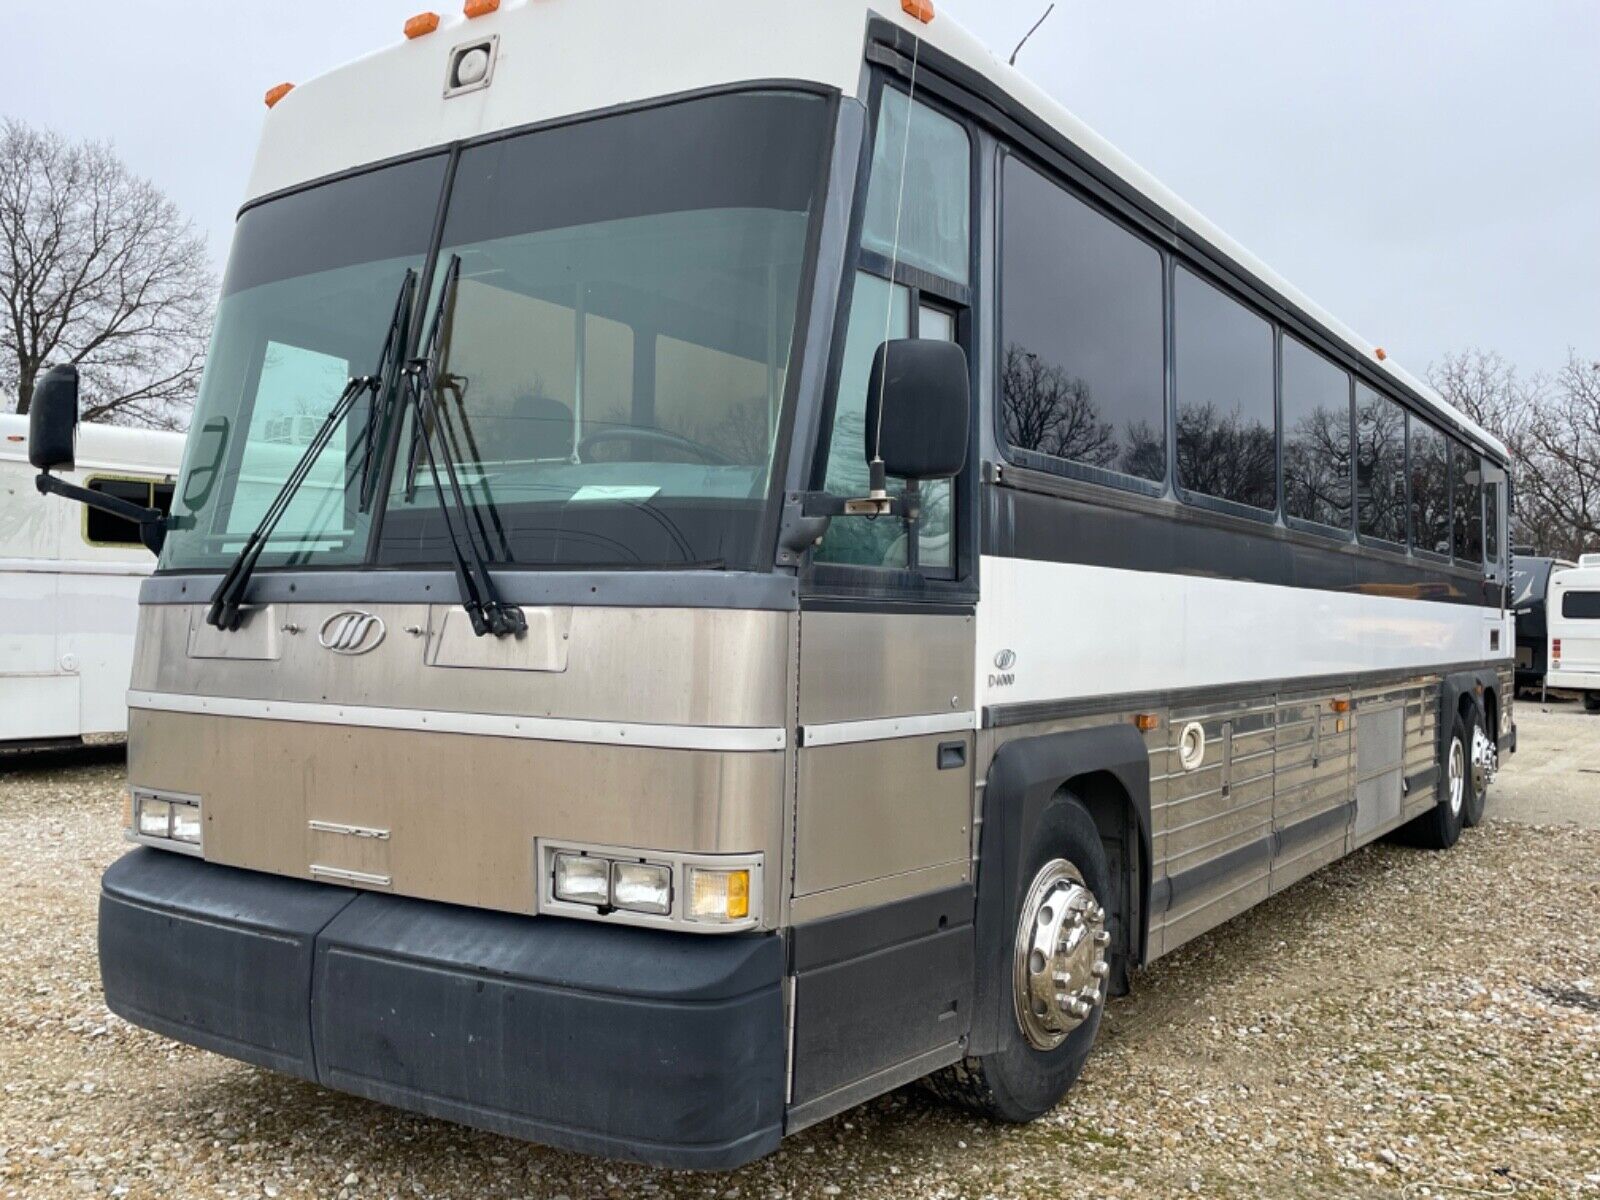 Owner 2004 Mci coach charter bus Detroit series 60 diesel uses buses rv Skoolie